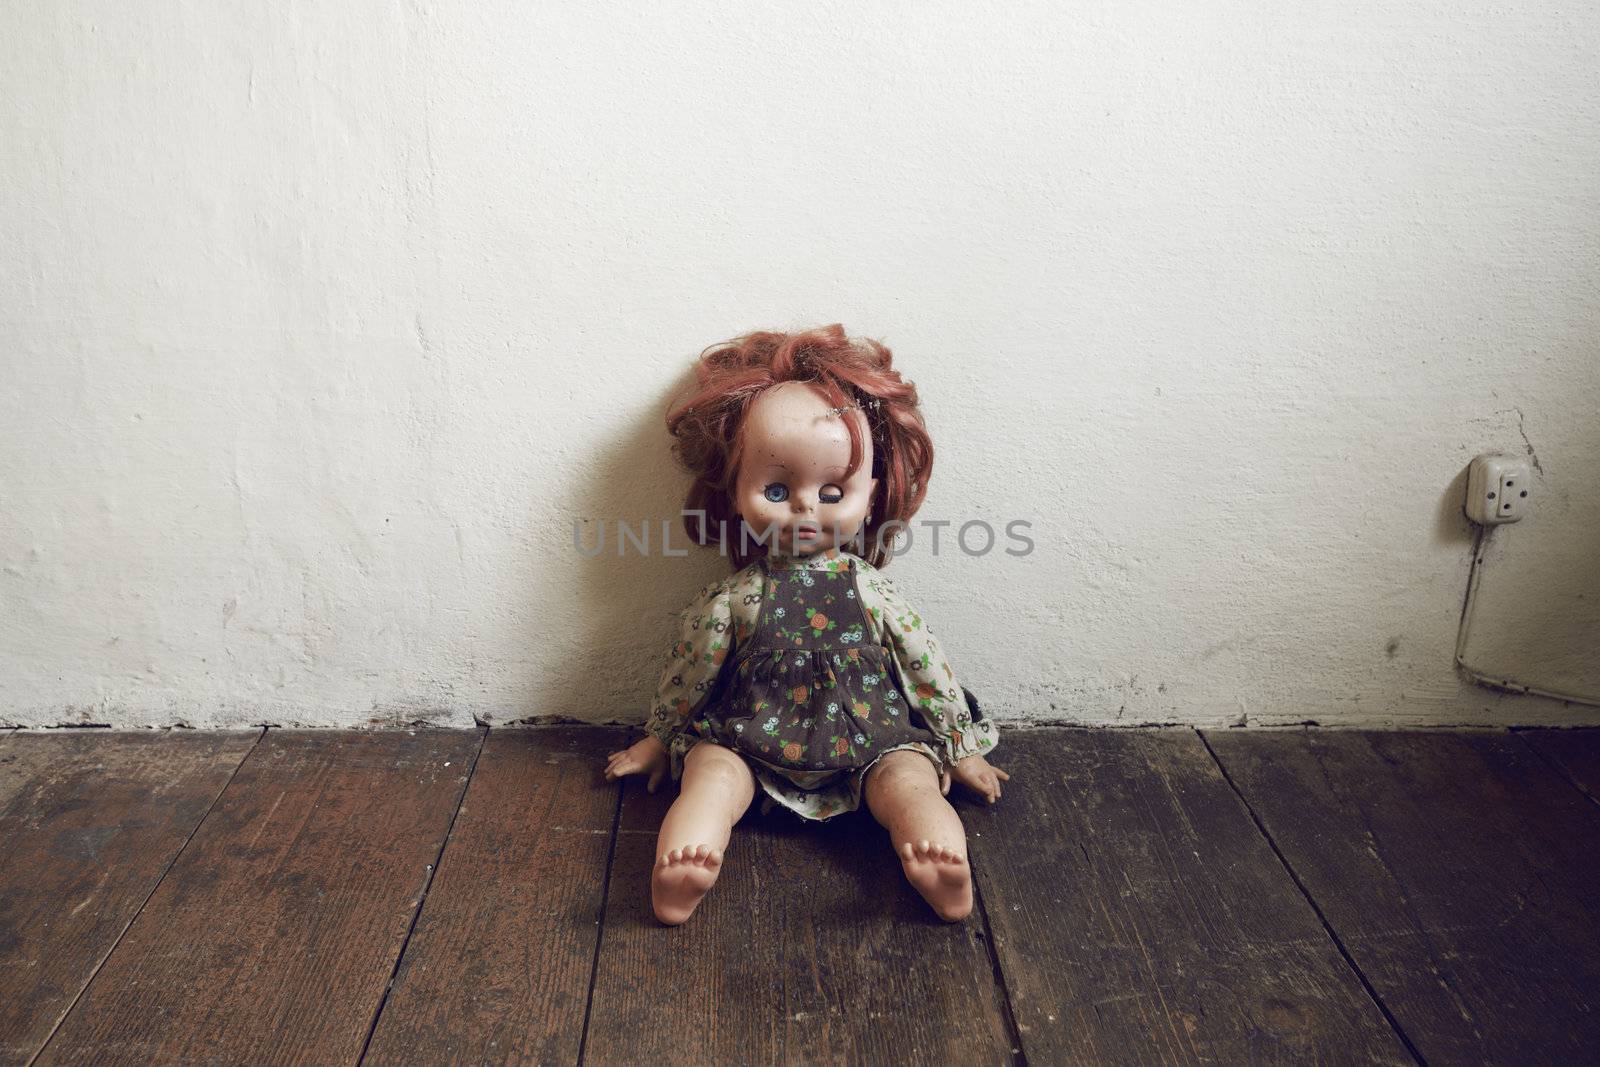 Creepy Vintage Doll on wooden floor